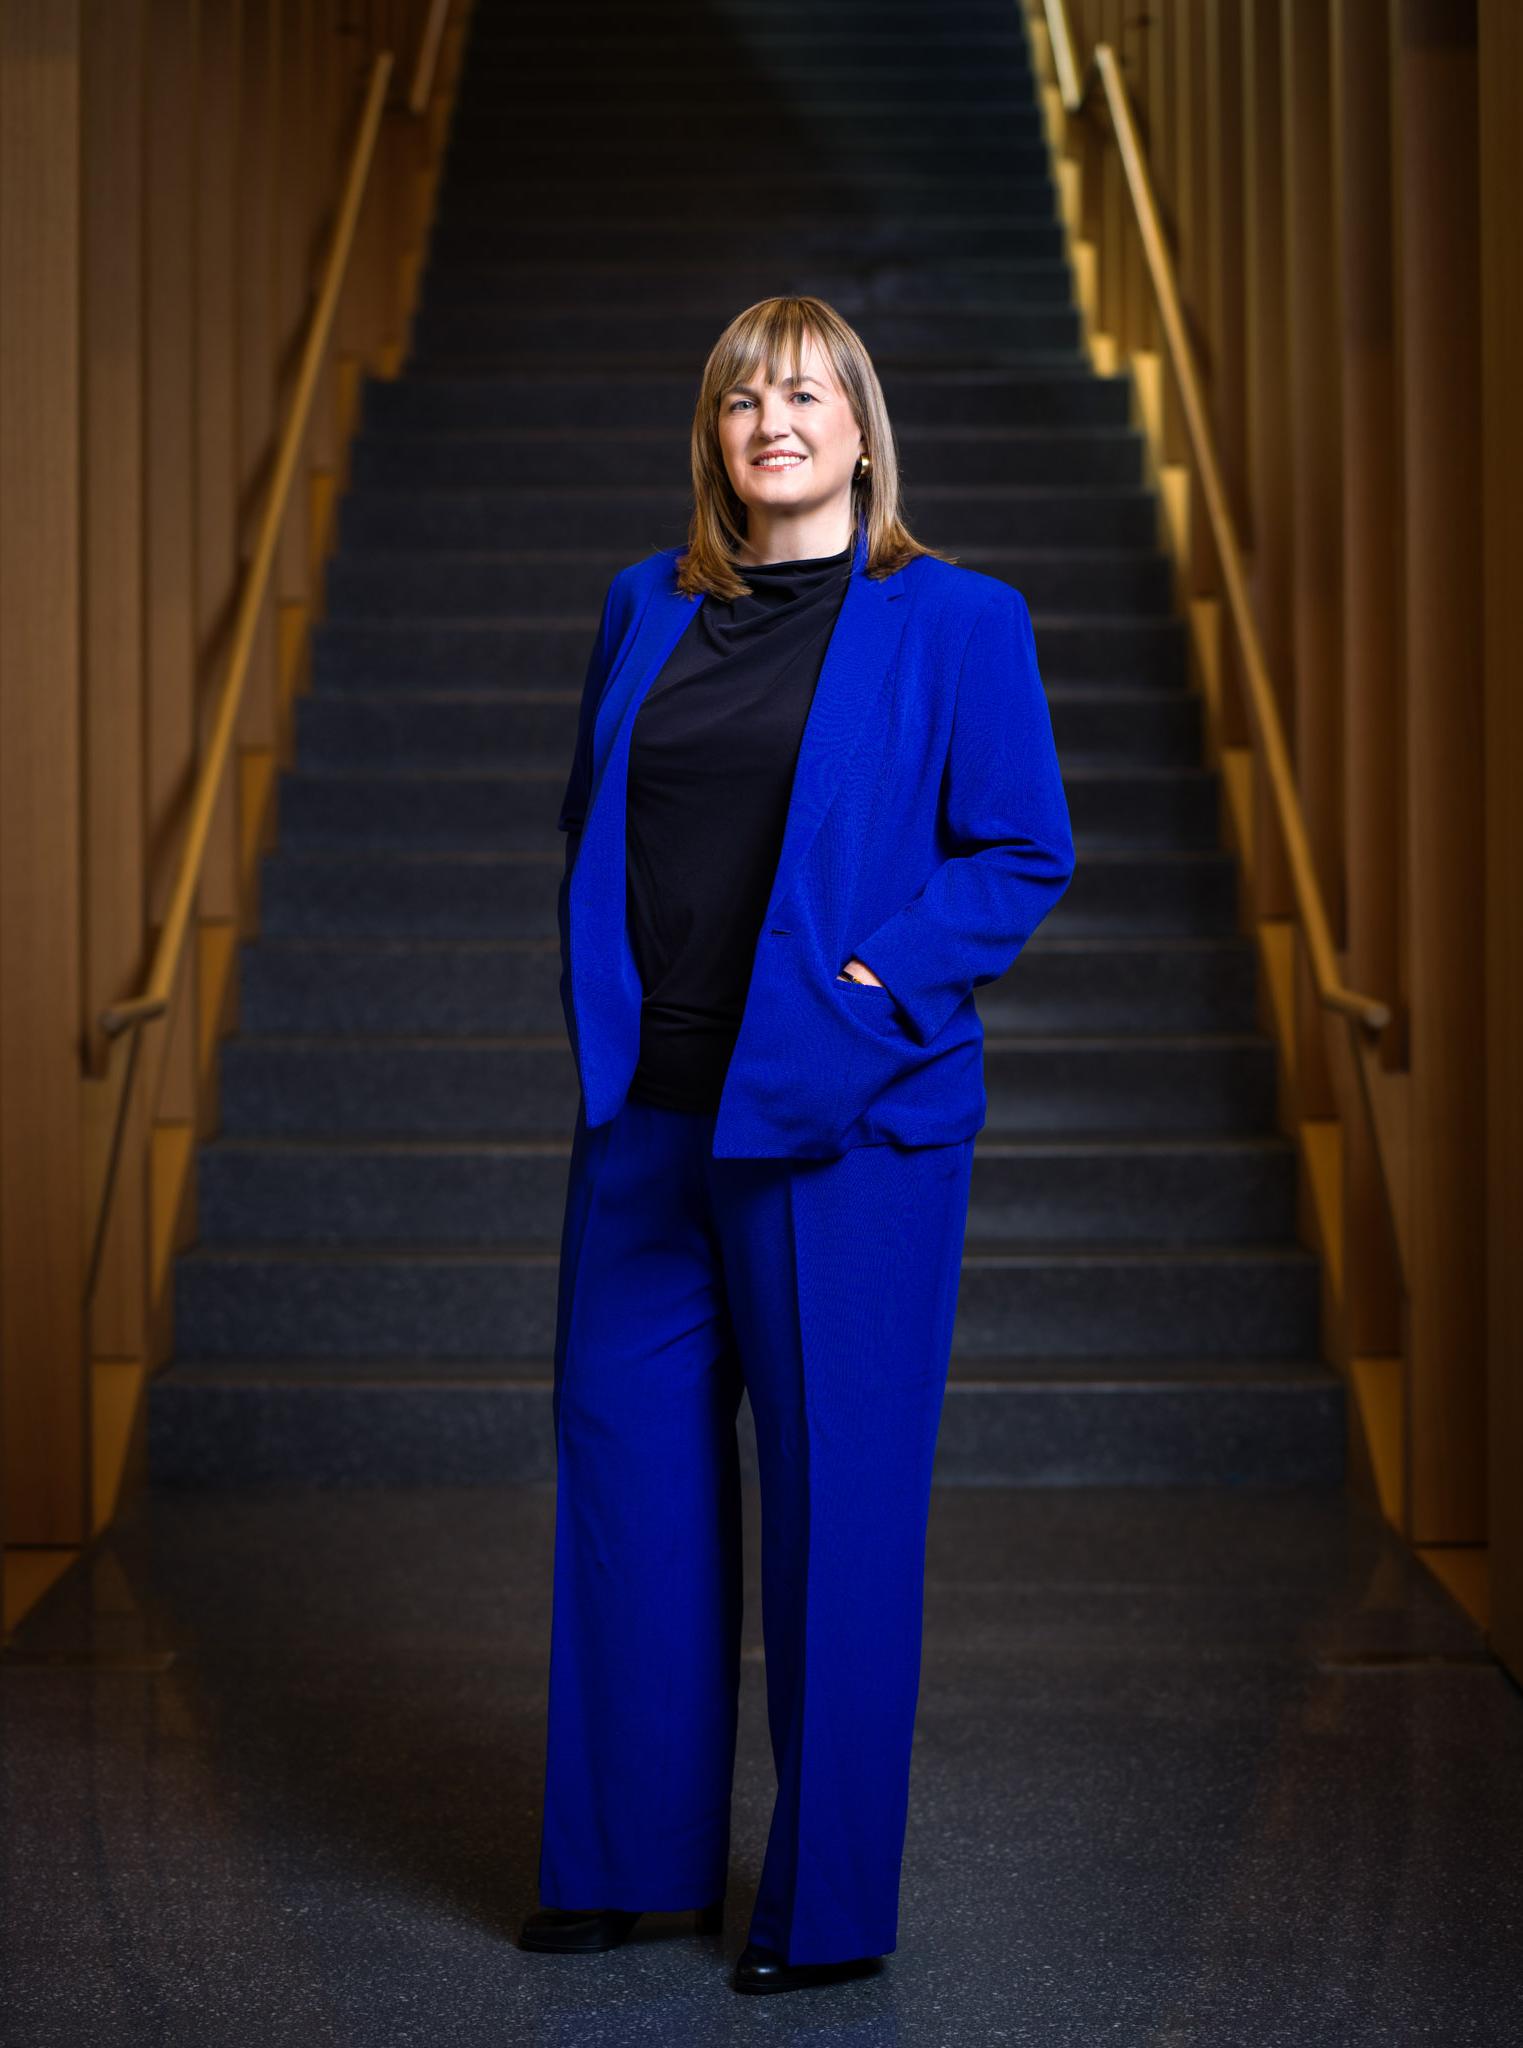 劳拉·罗森伯里总统站在米尔斯坦大楼的楼梯前. 她穿着一套蓝色的衣服